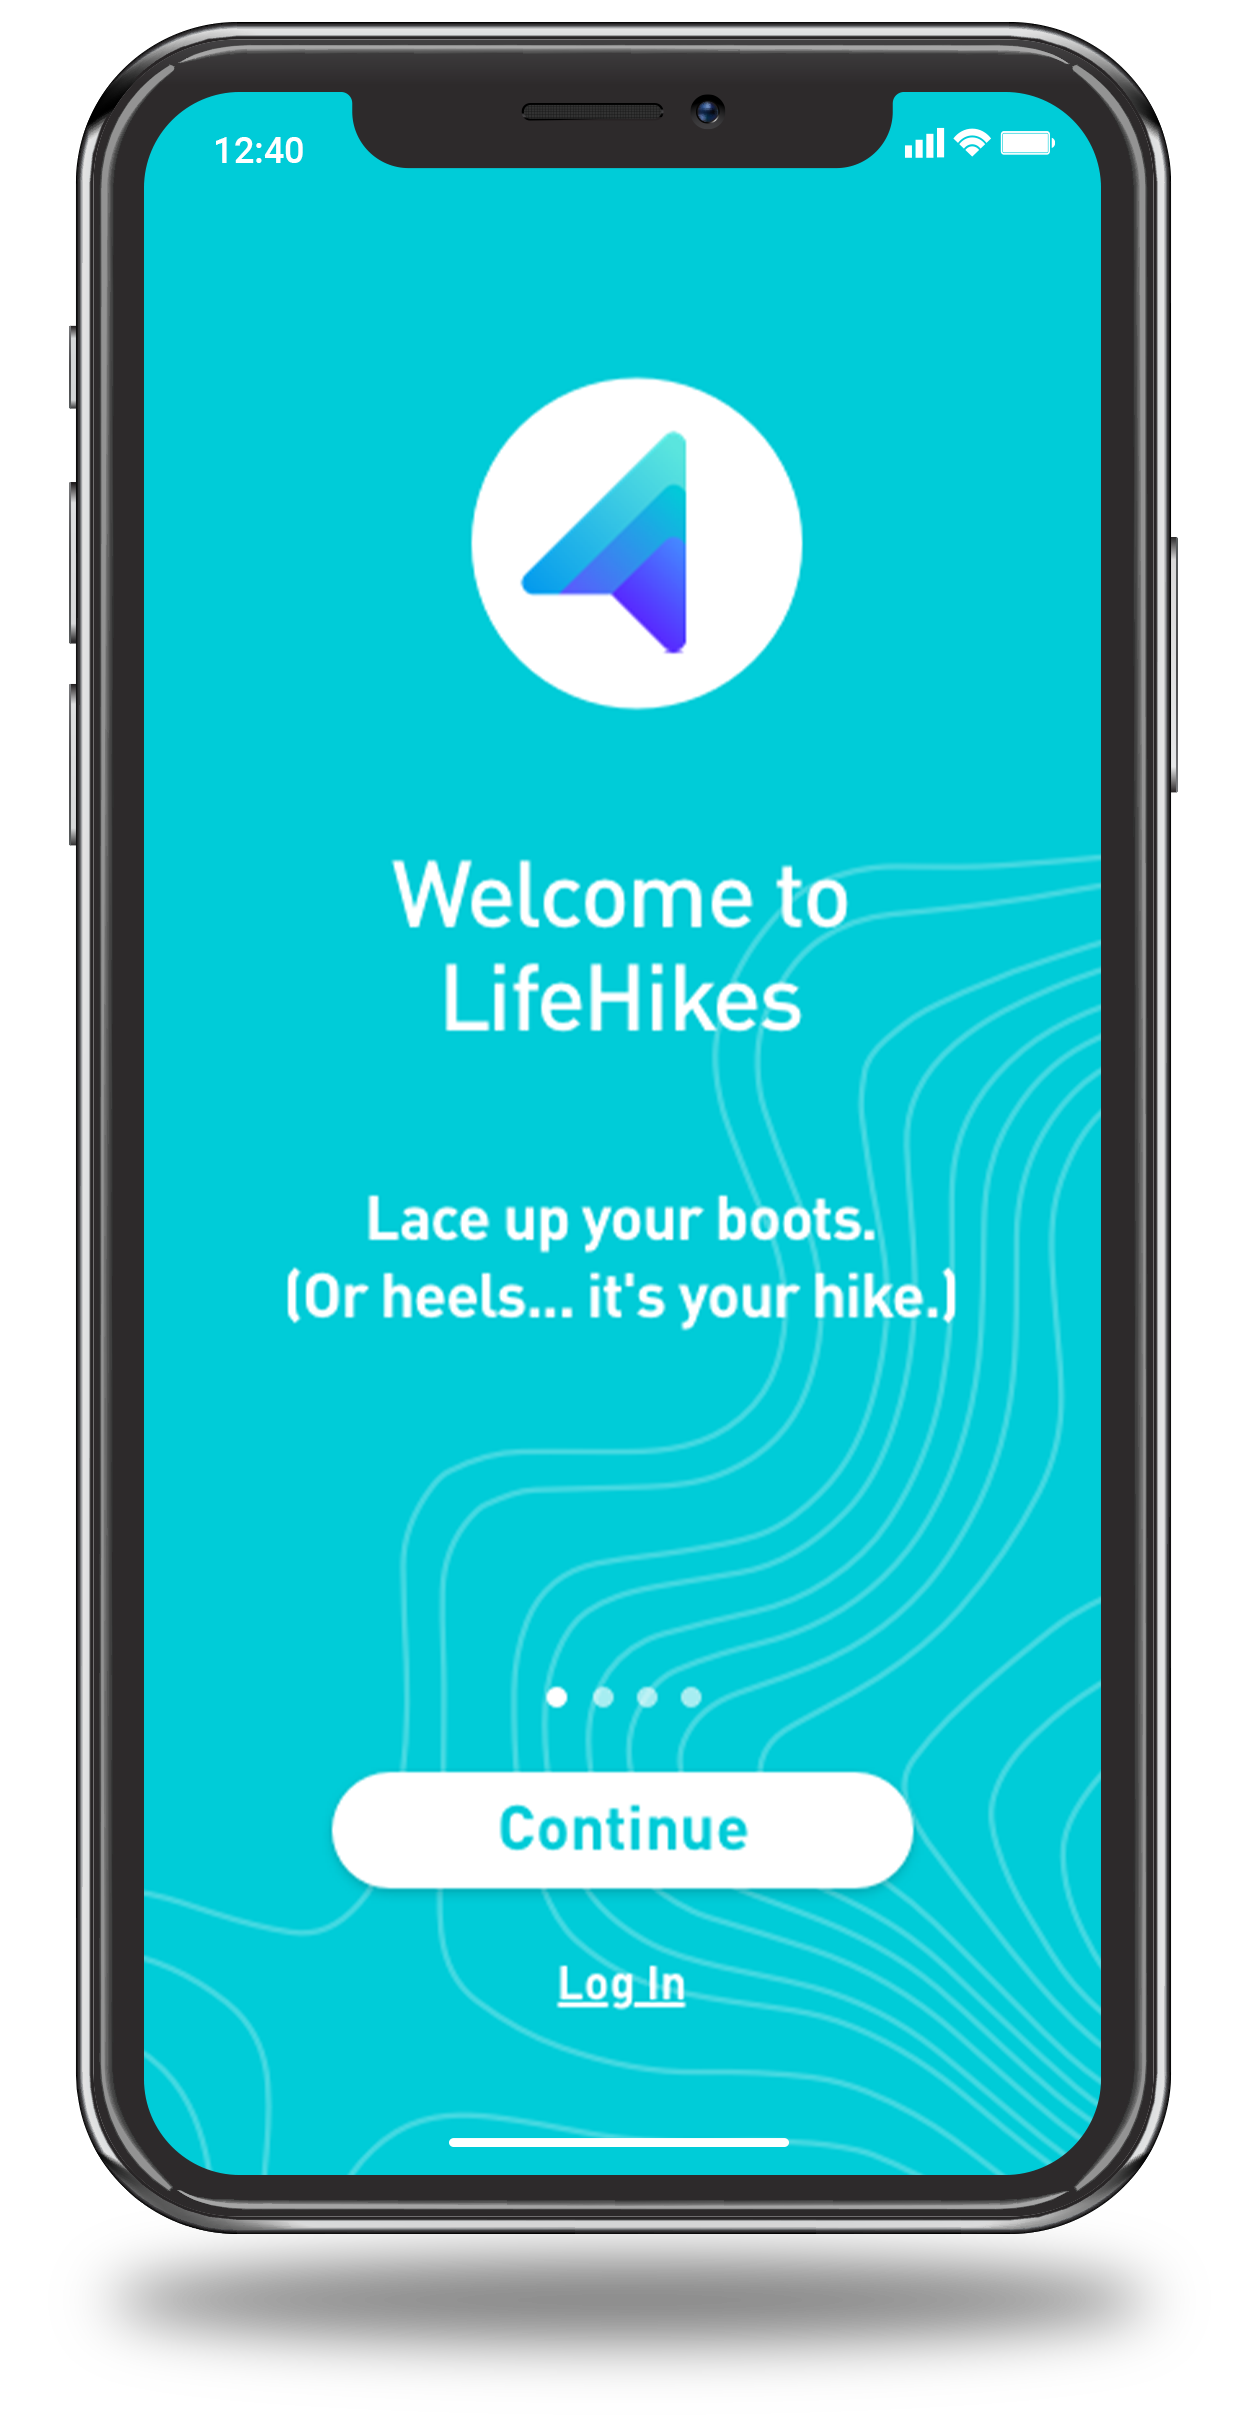 LifeHikes leadership skills training app